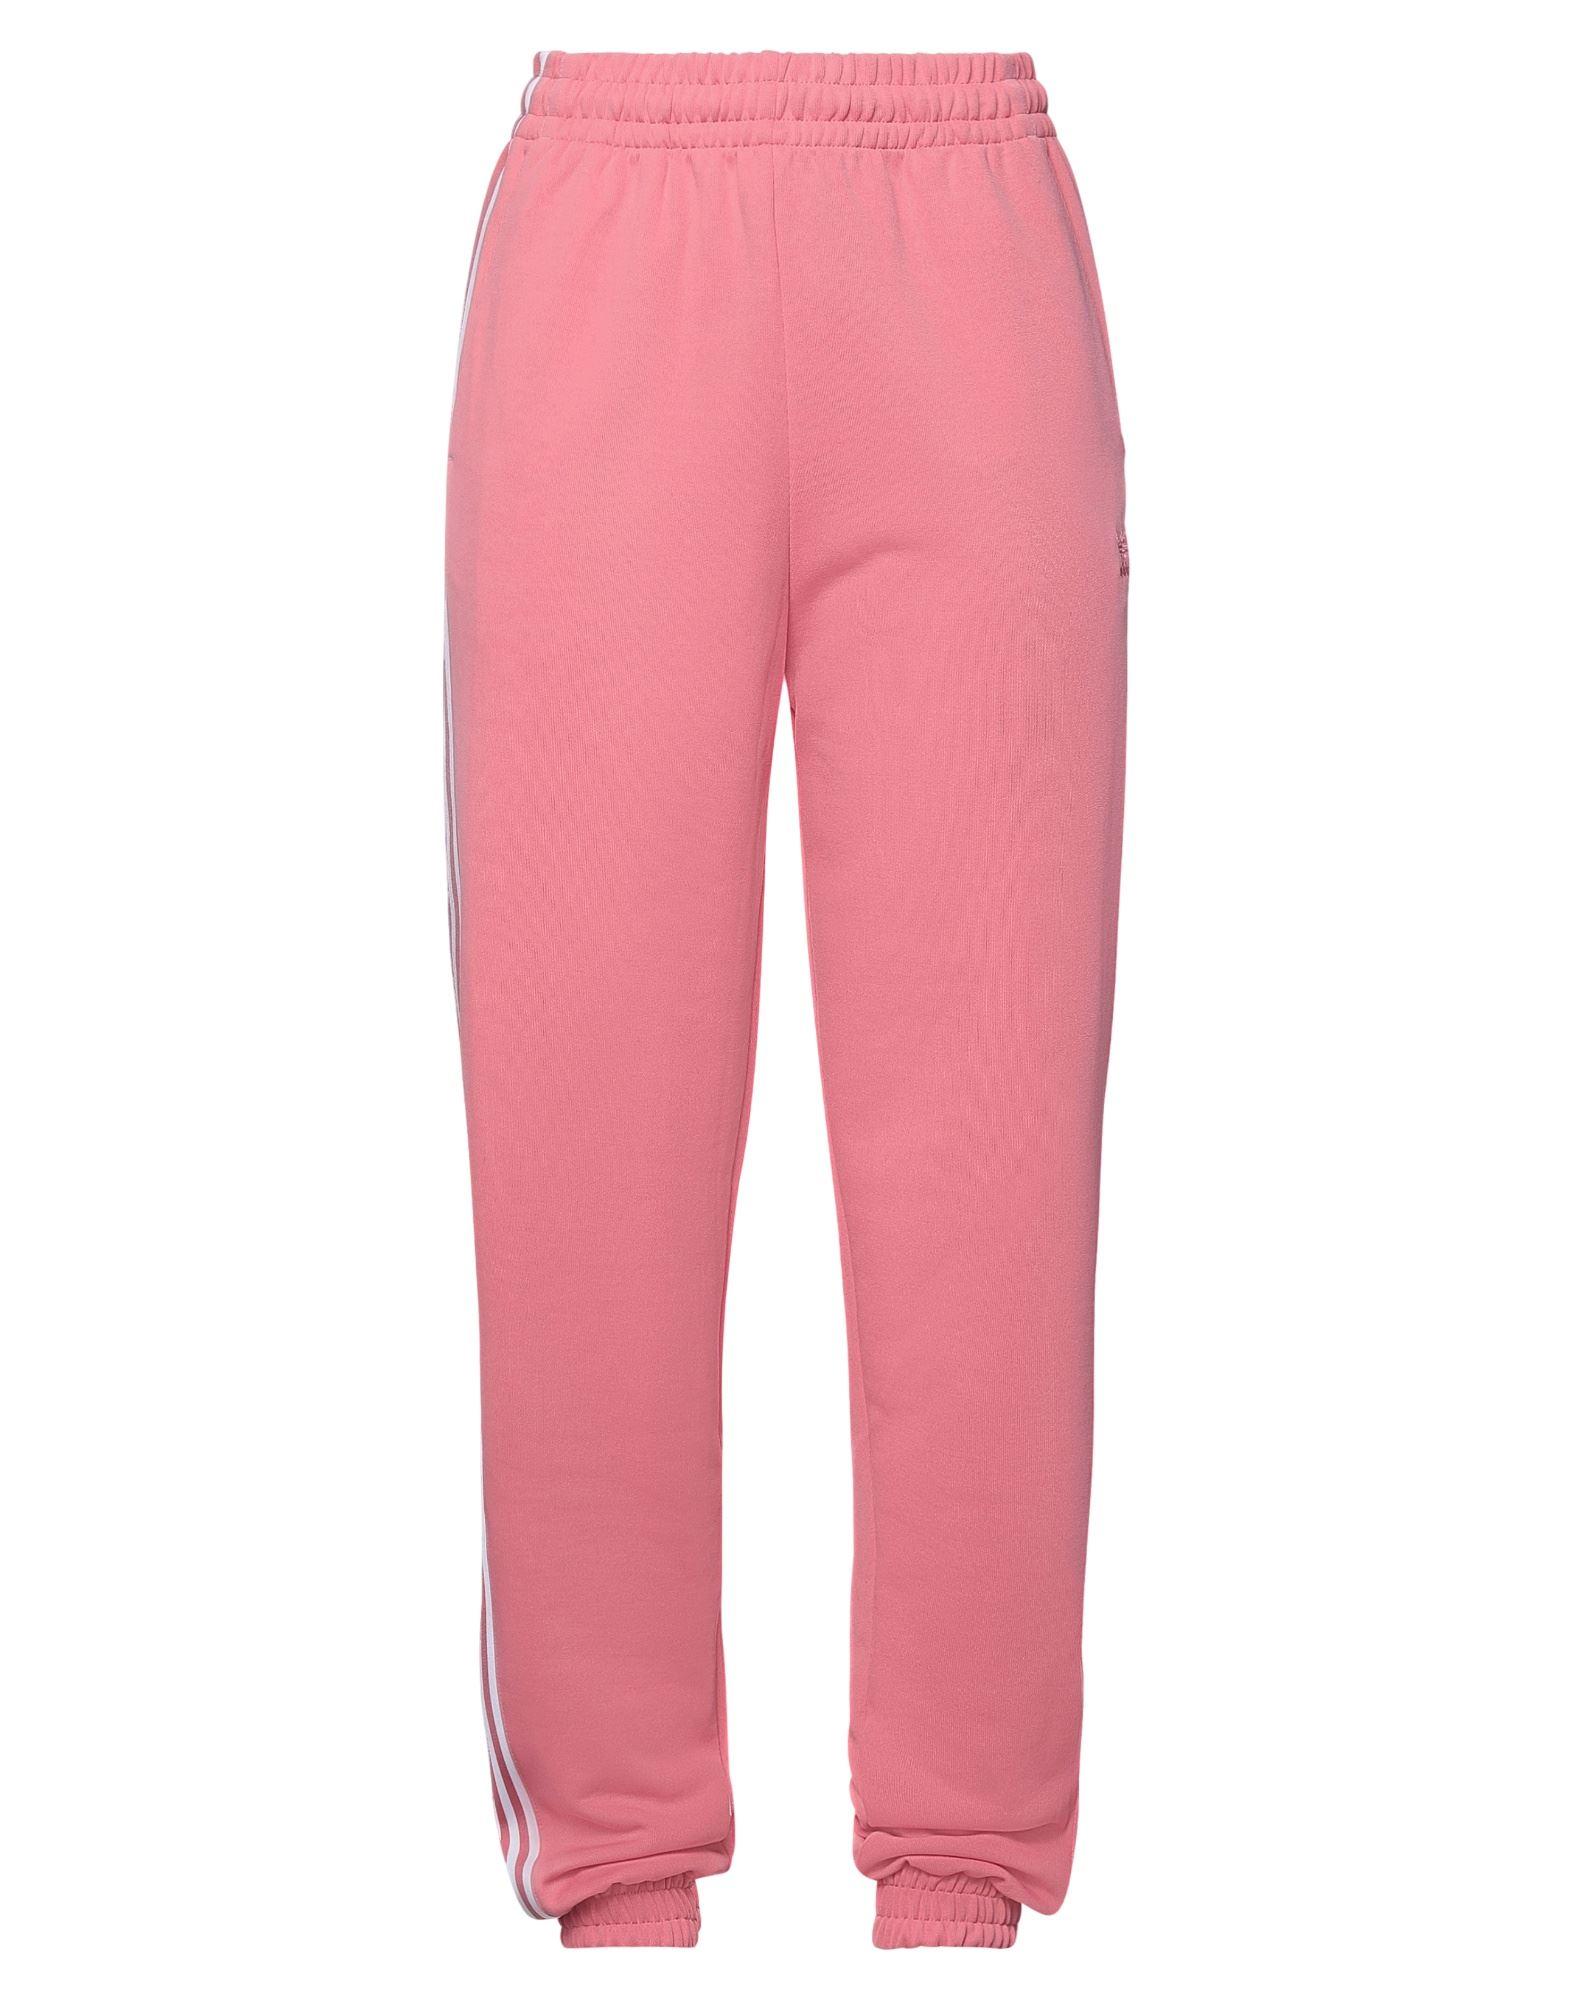 adidas Originals Fleece Trouser in Pink | Lyst